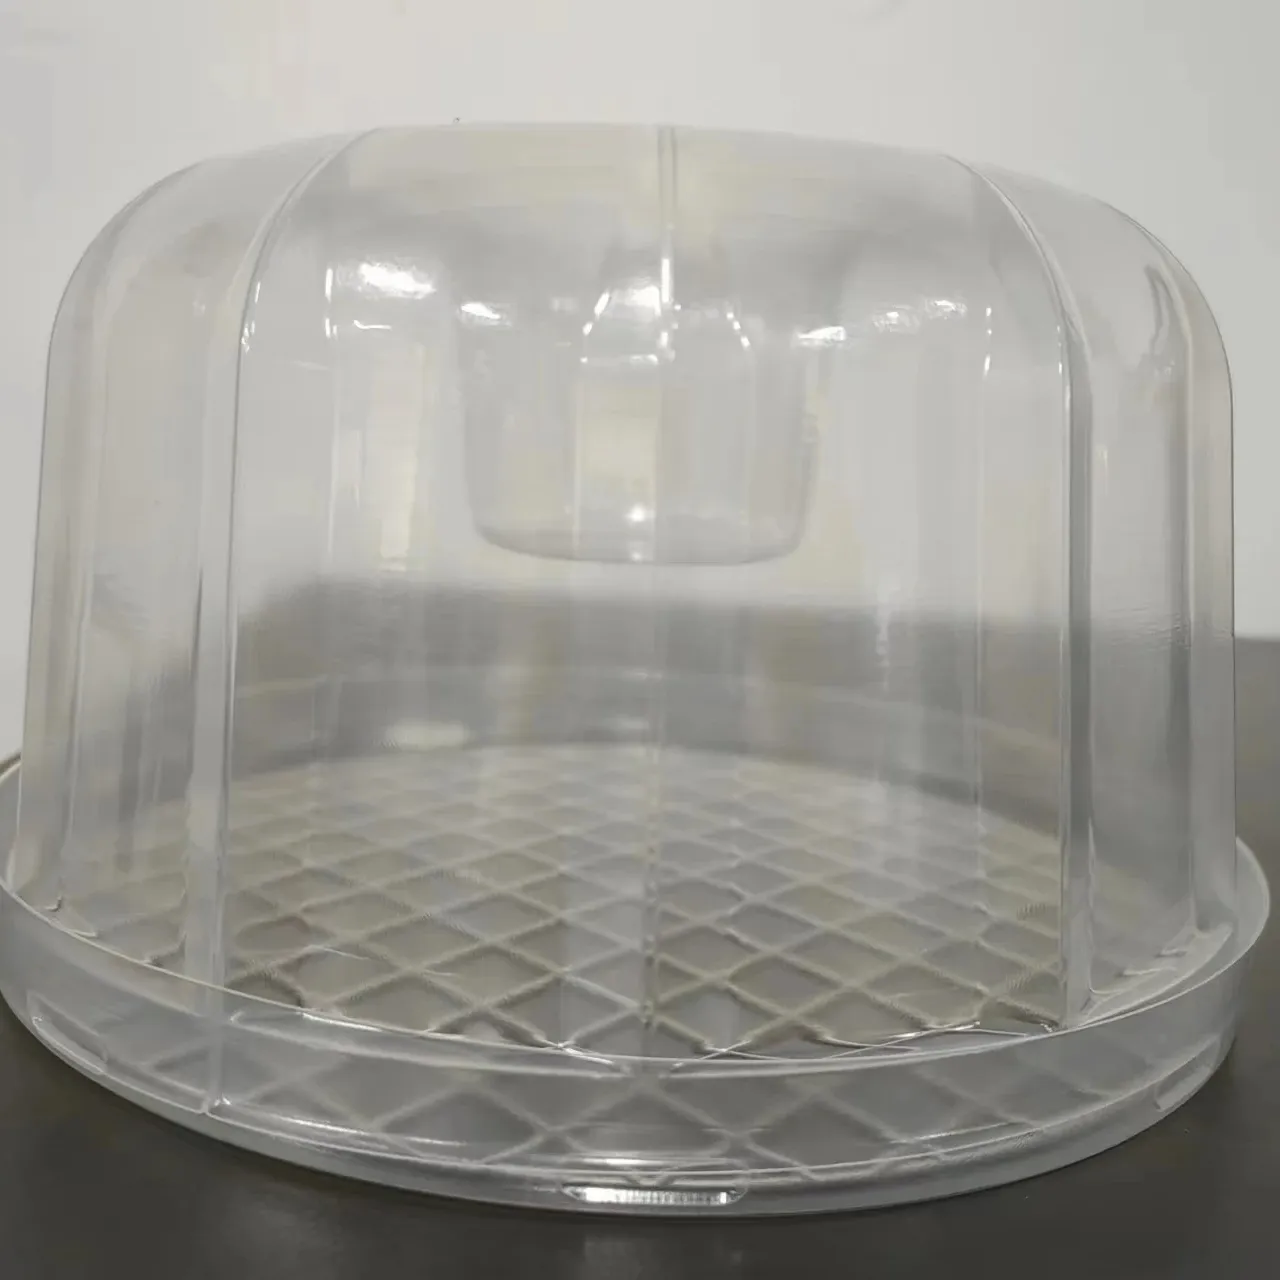 케이크 치즈 슬라이스 컵케익 성형 용기 포장용 맞춤형 일회용 투명 플라스틱 용기